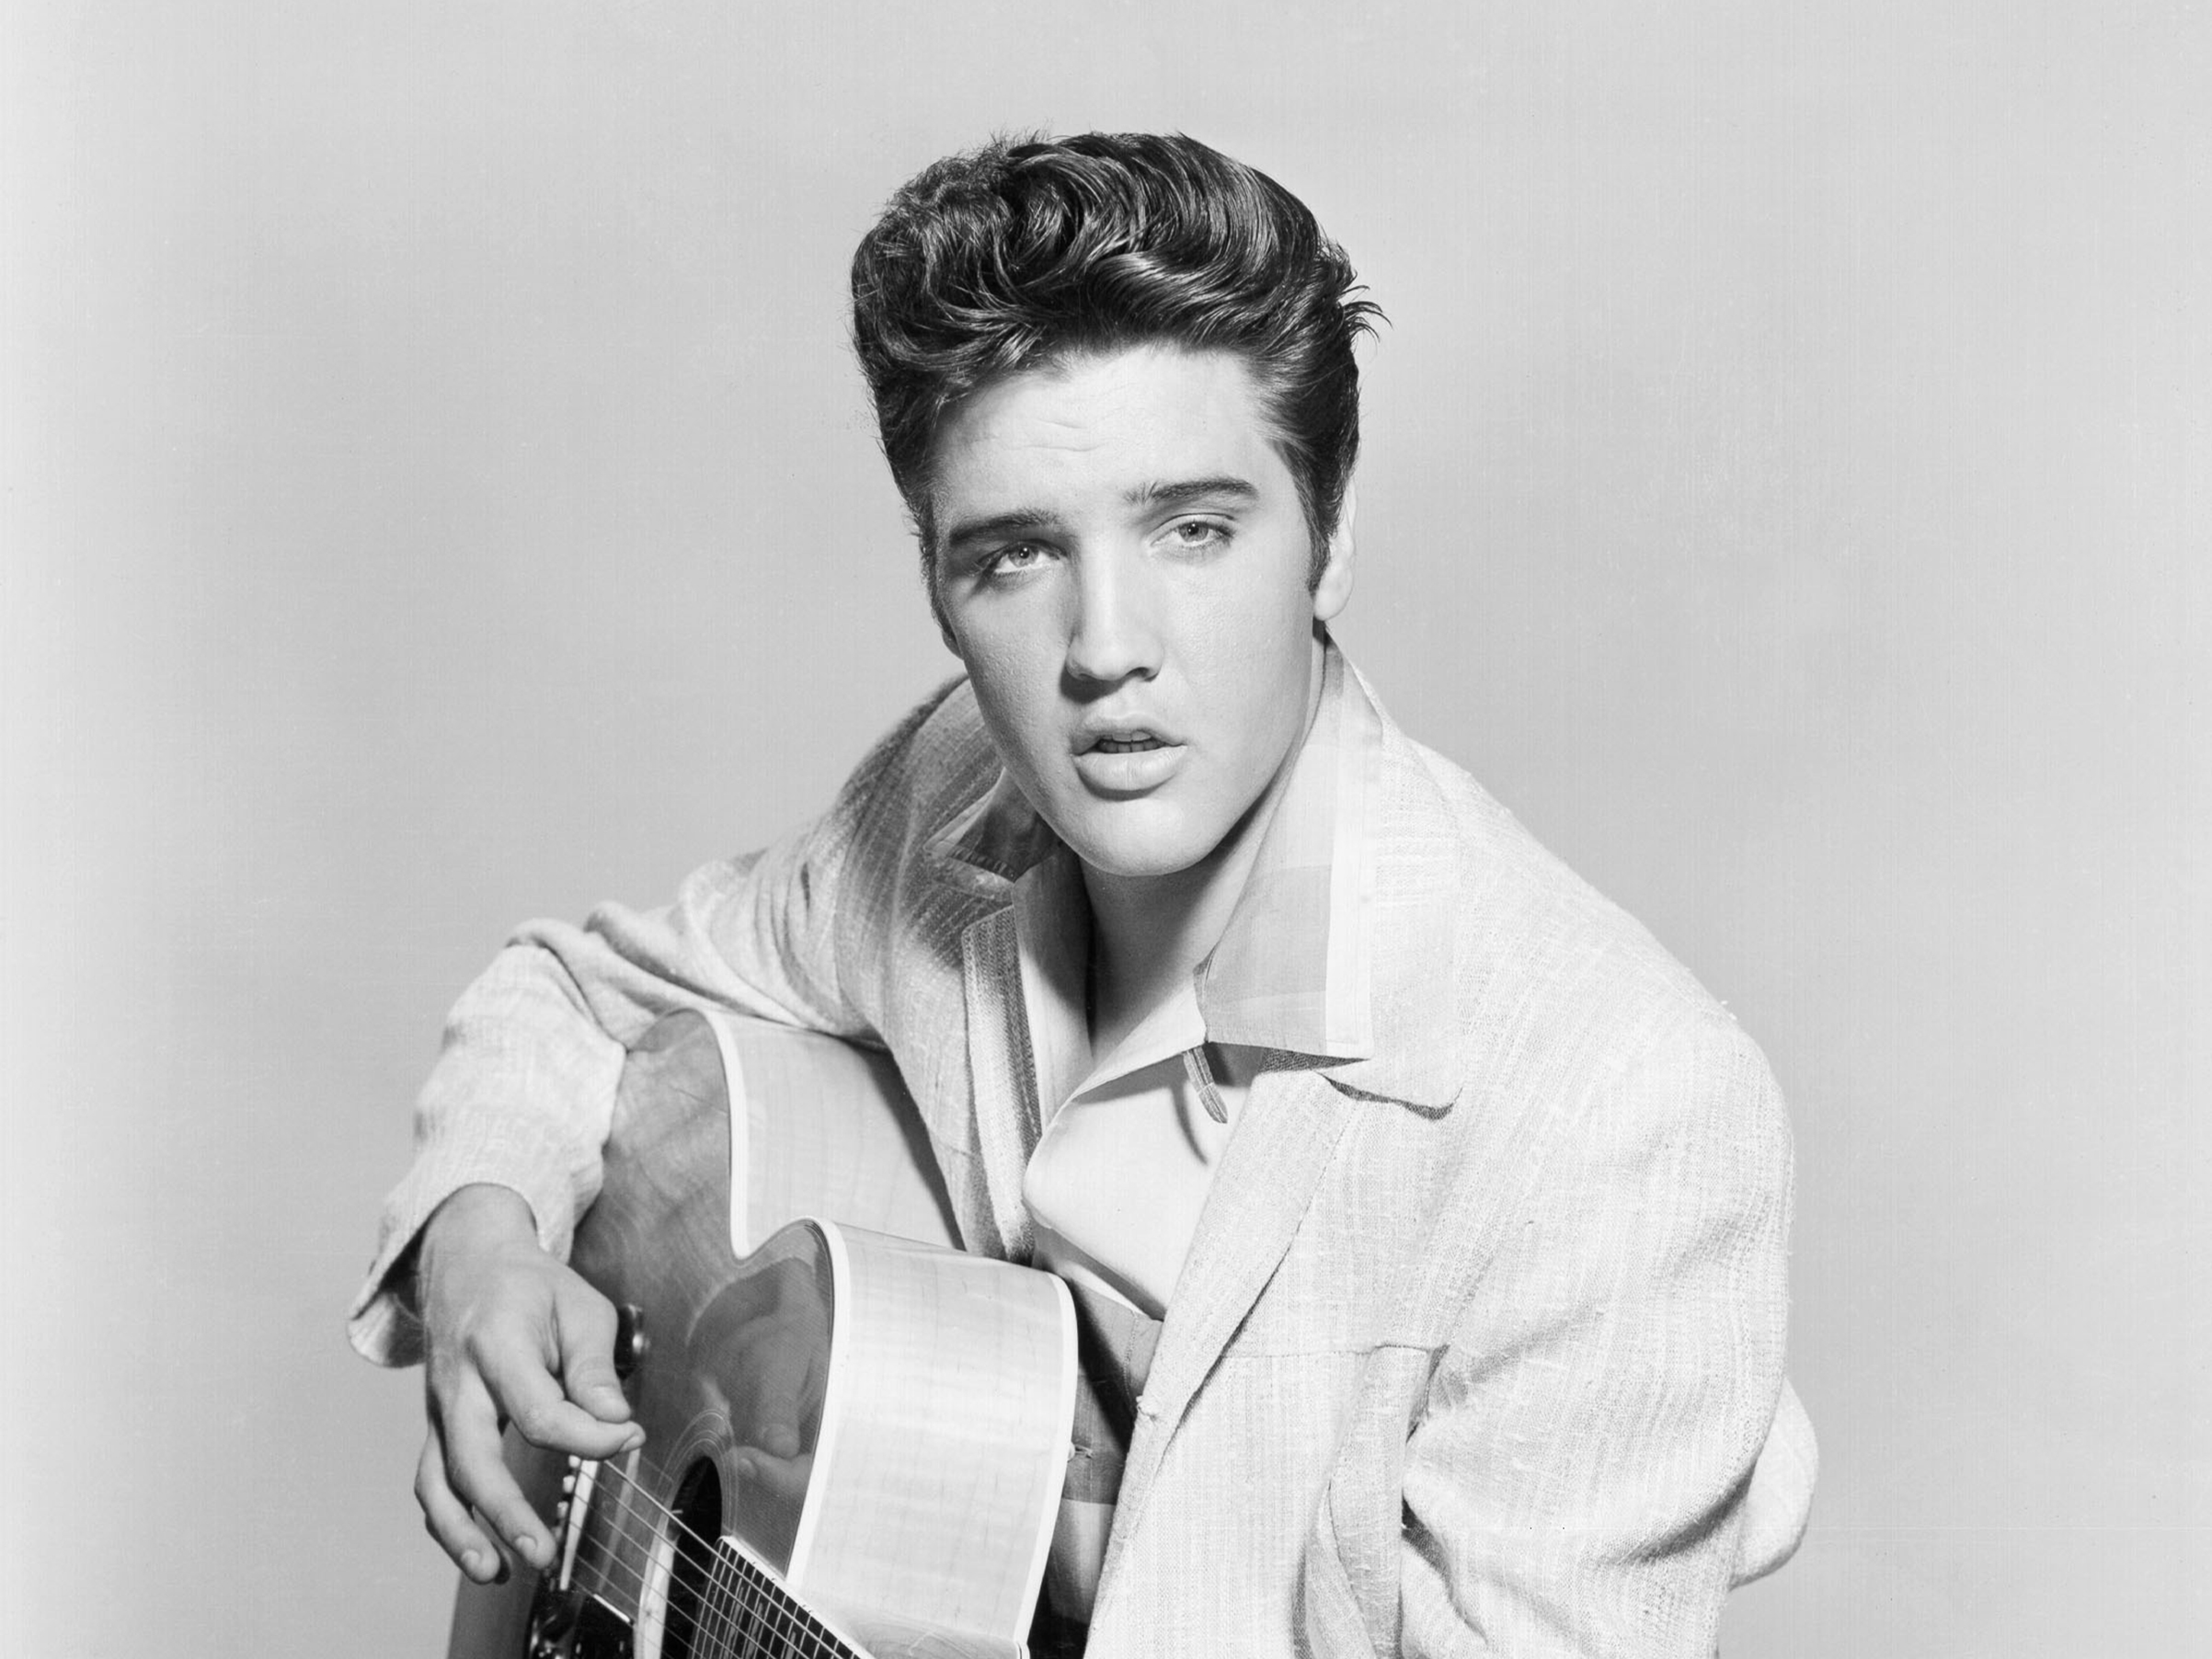 Elvis Presley The King